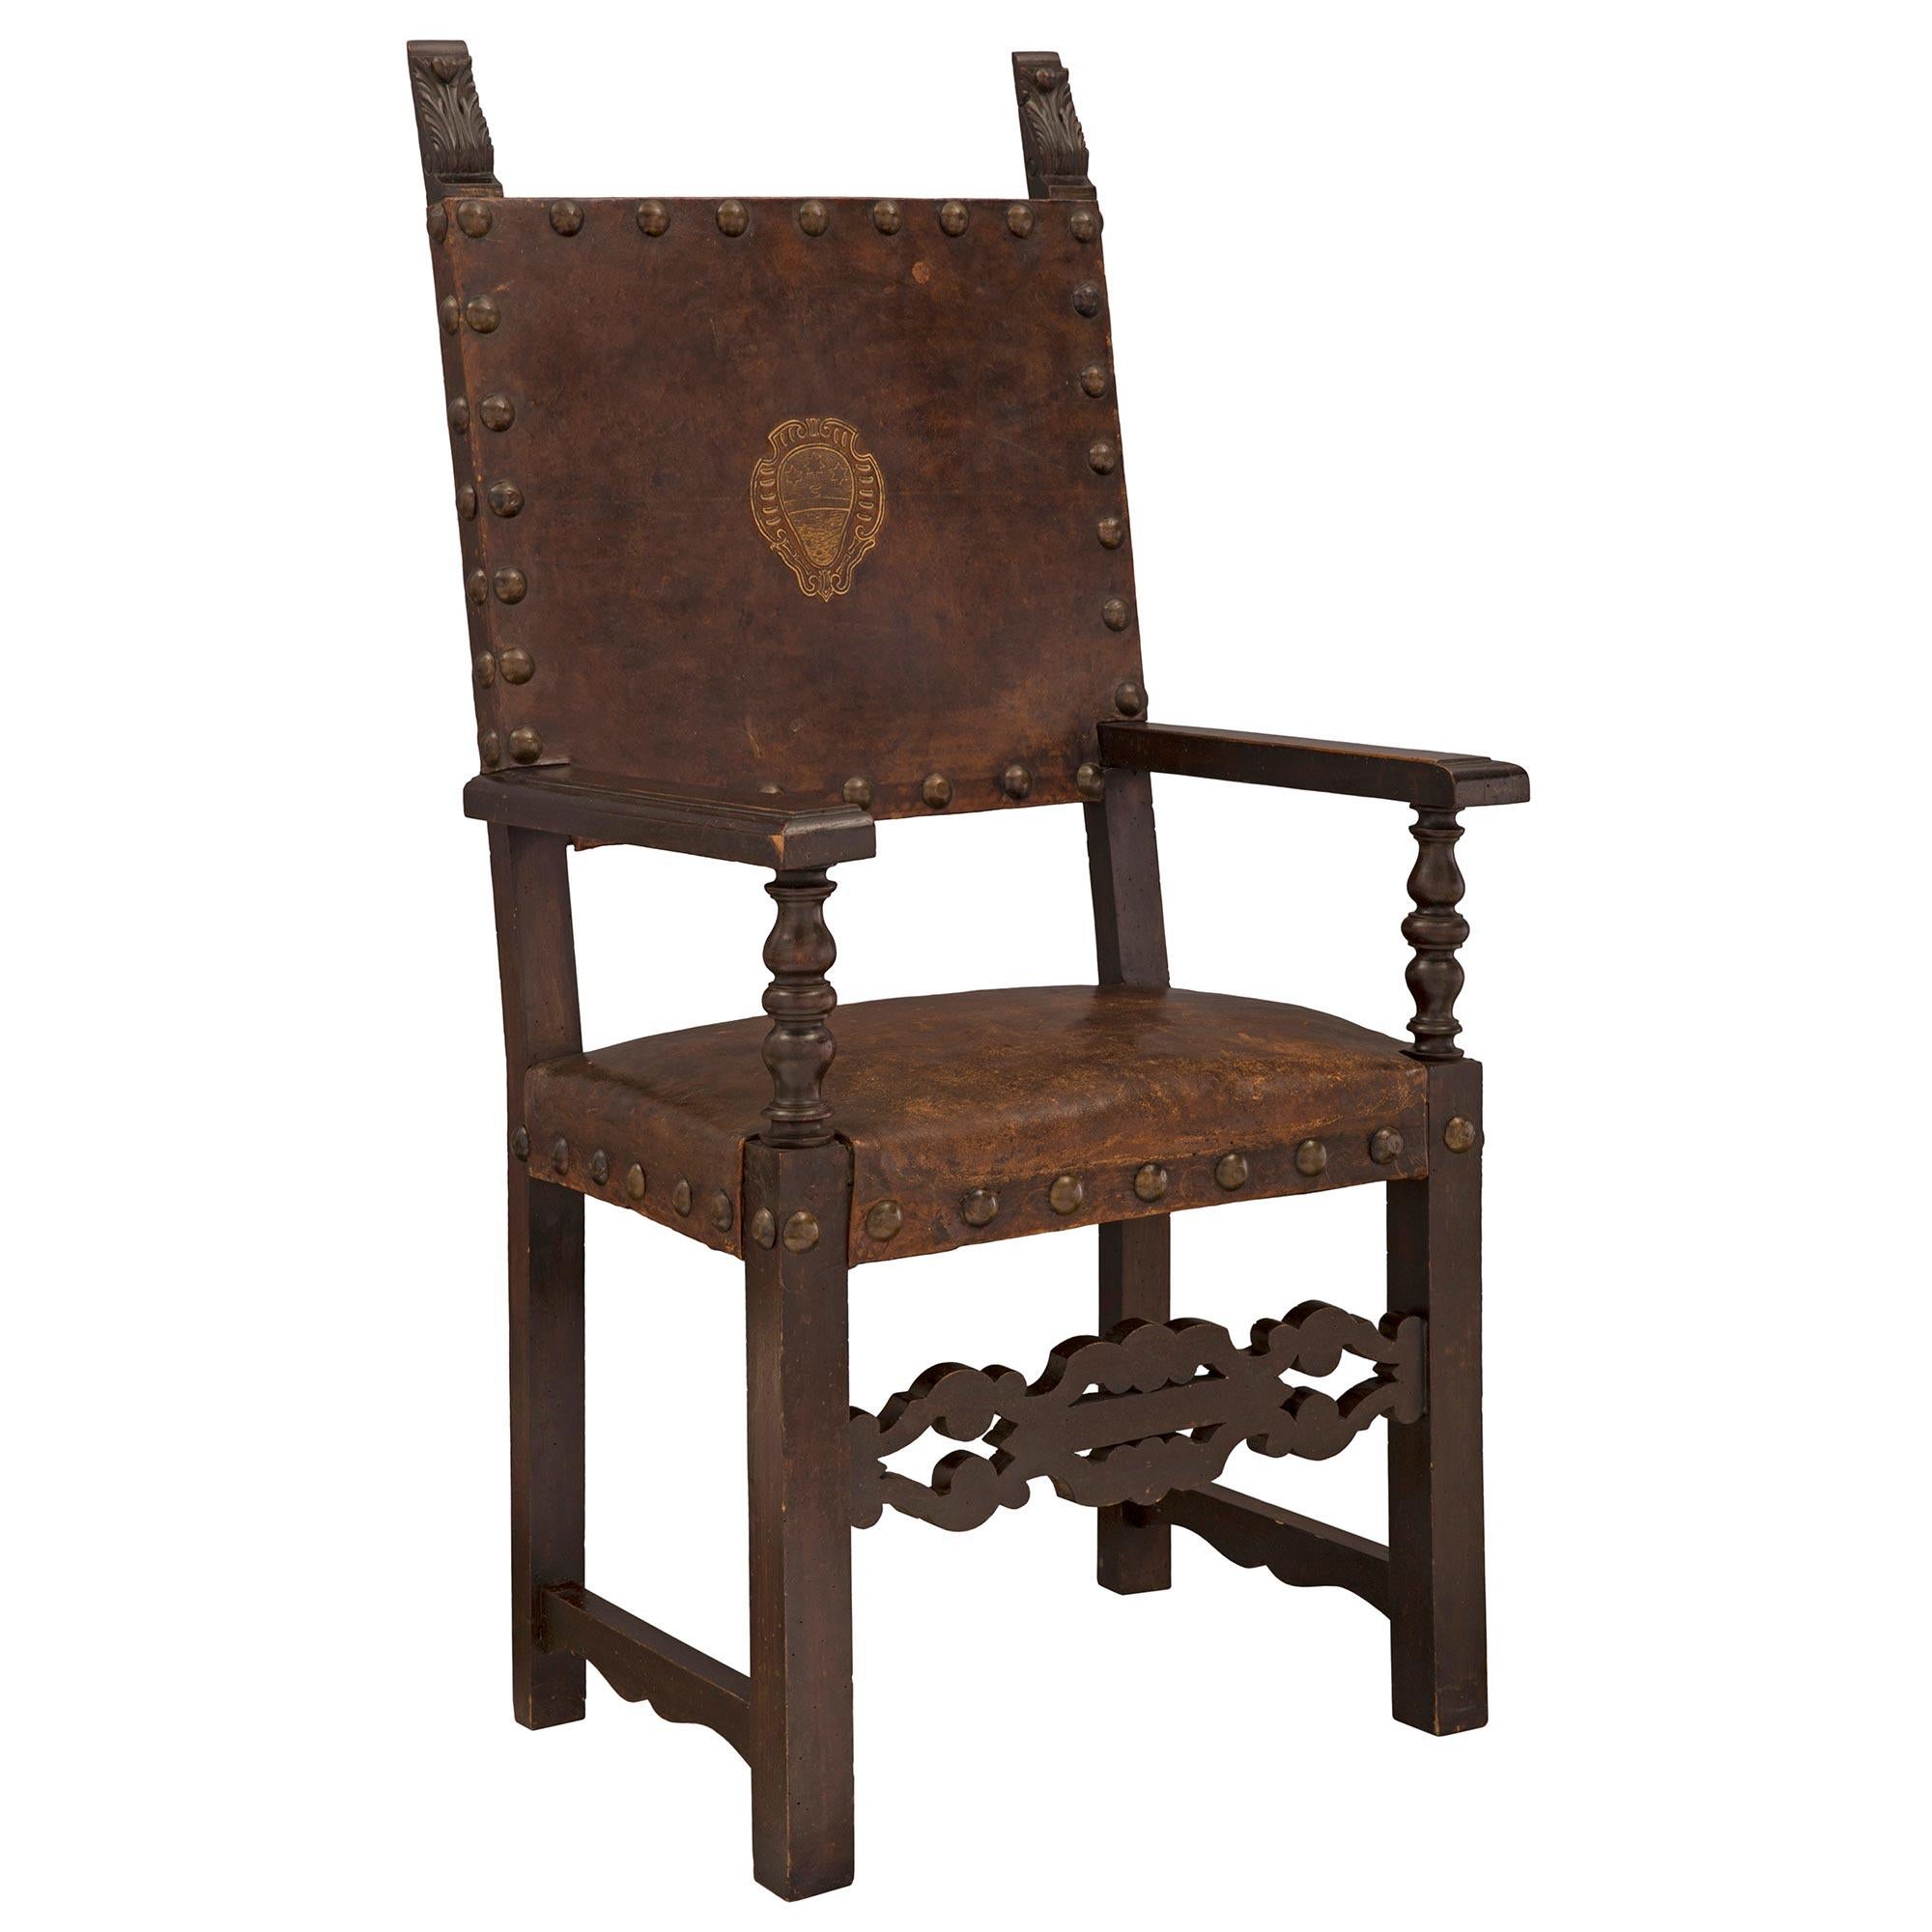 Un bel et très impressionnant ensemble de quatre fauteuils trônes italiens du début du 19ème siècle en noyer et cuir pressé. Chaque chaise est surélevée par des pieds carrés droits reliés par de fines civières festonnées de chaque côté et par de